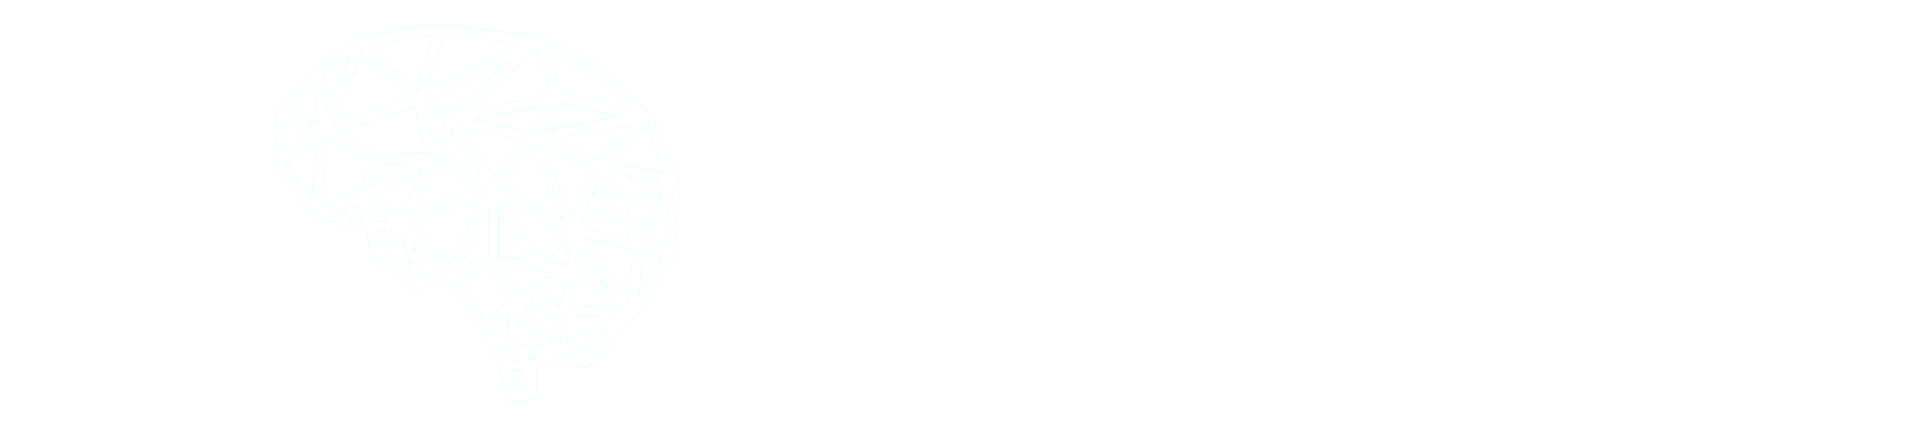 psycom-logo-white.png